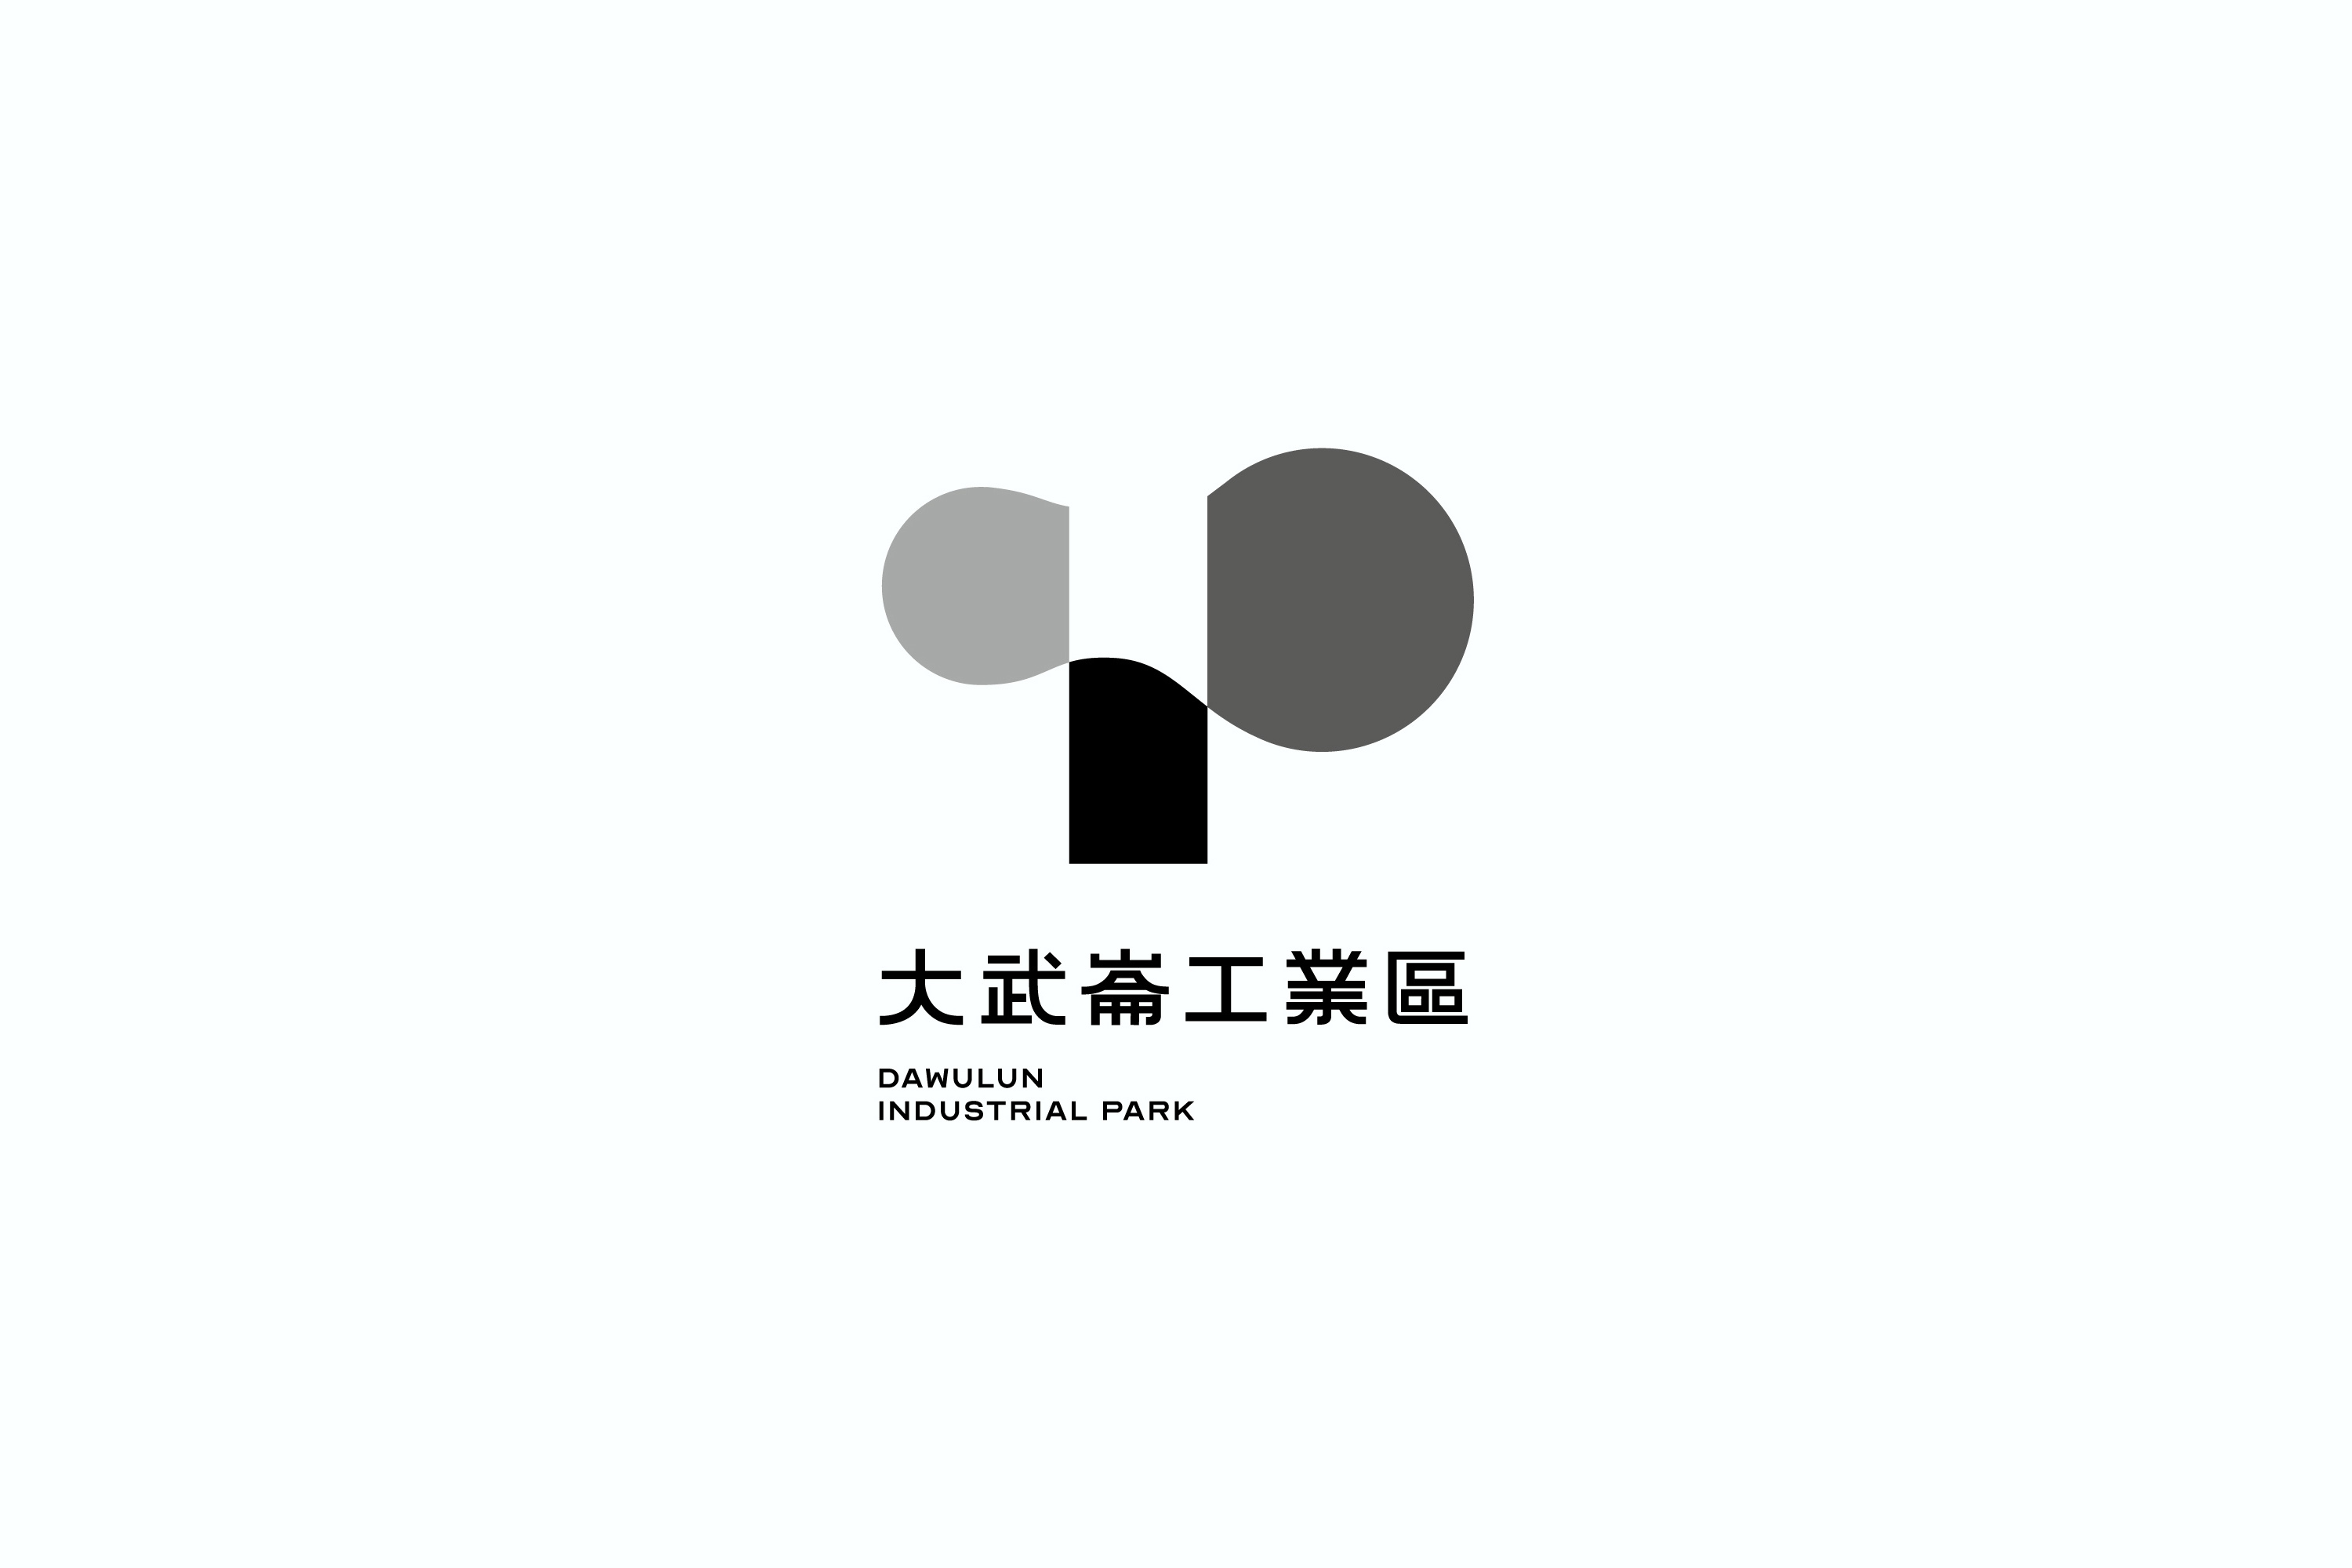 没灵感了？看看台湾设计师的Logo设计